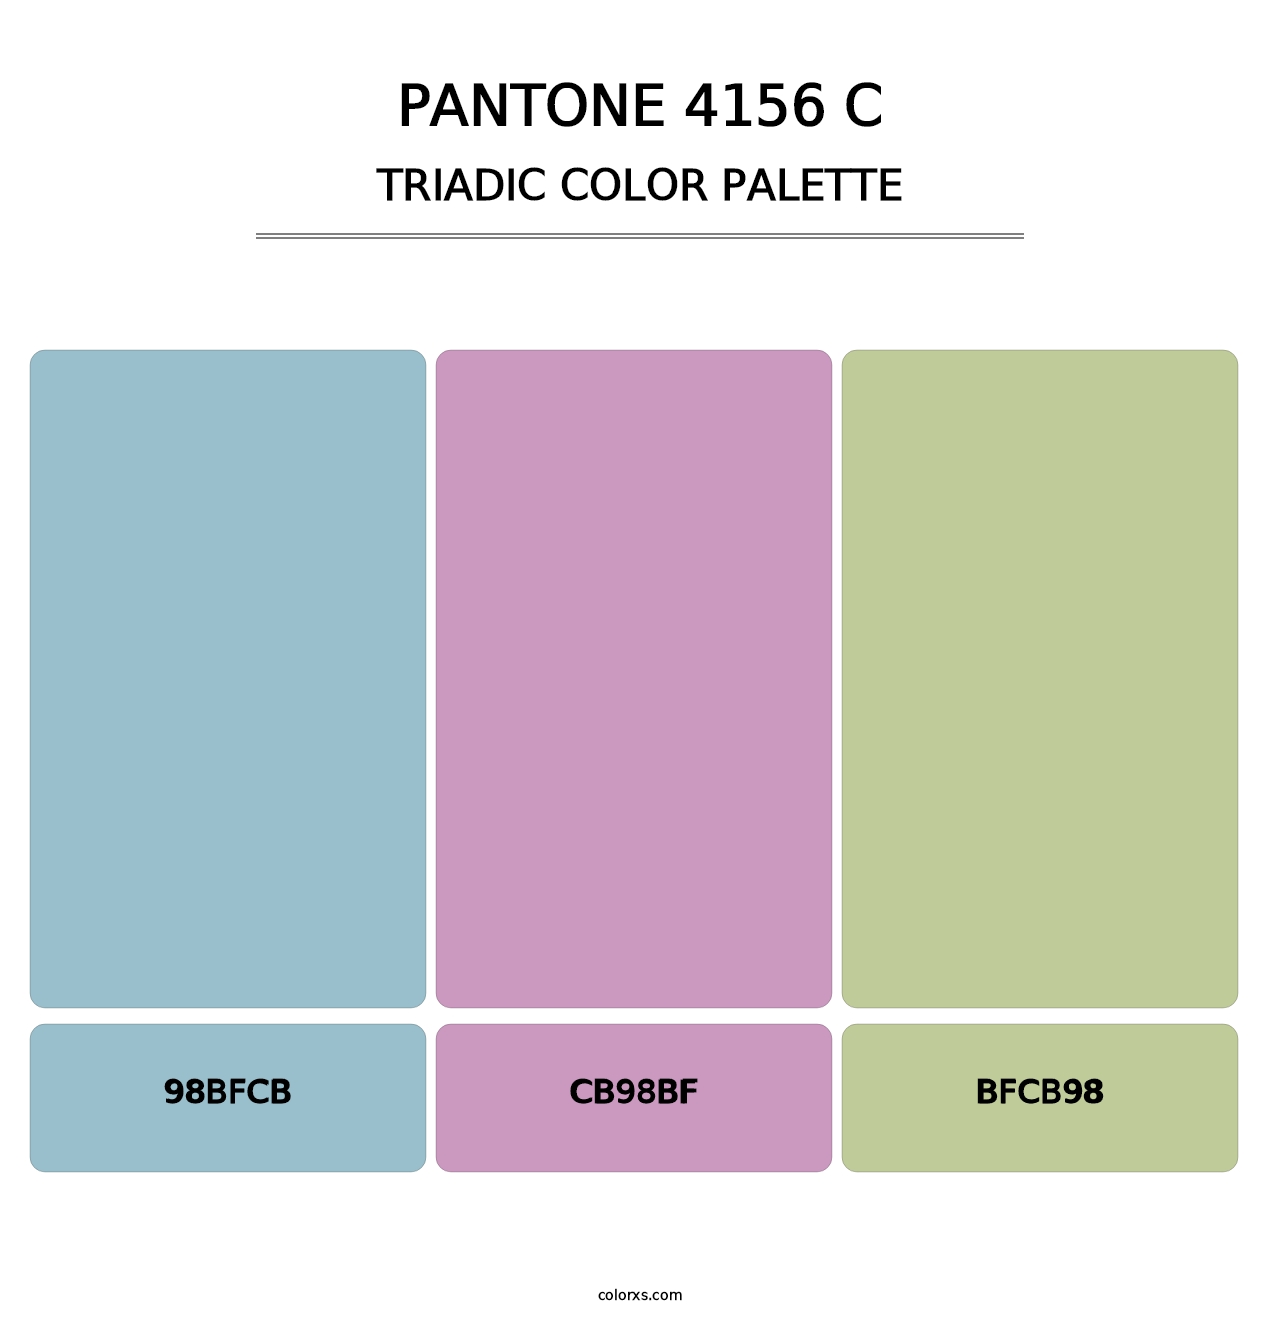 PANTONE 4156 C - Triadic Color Palette